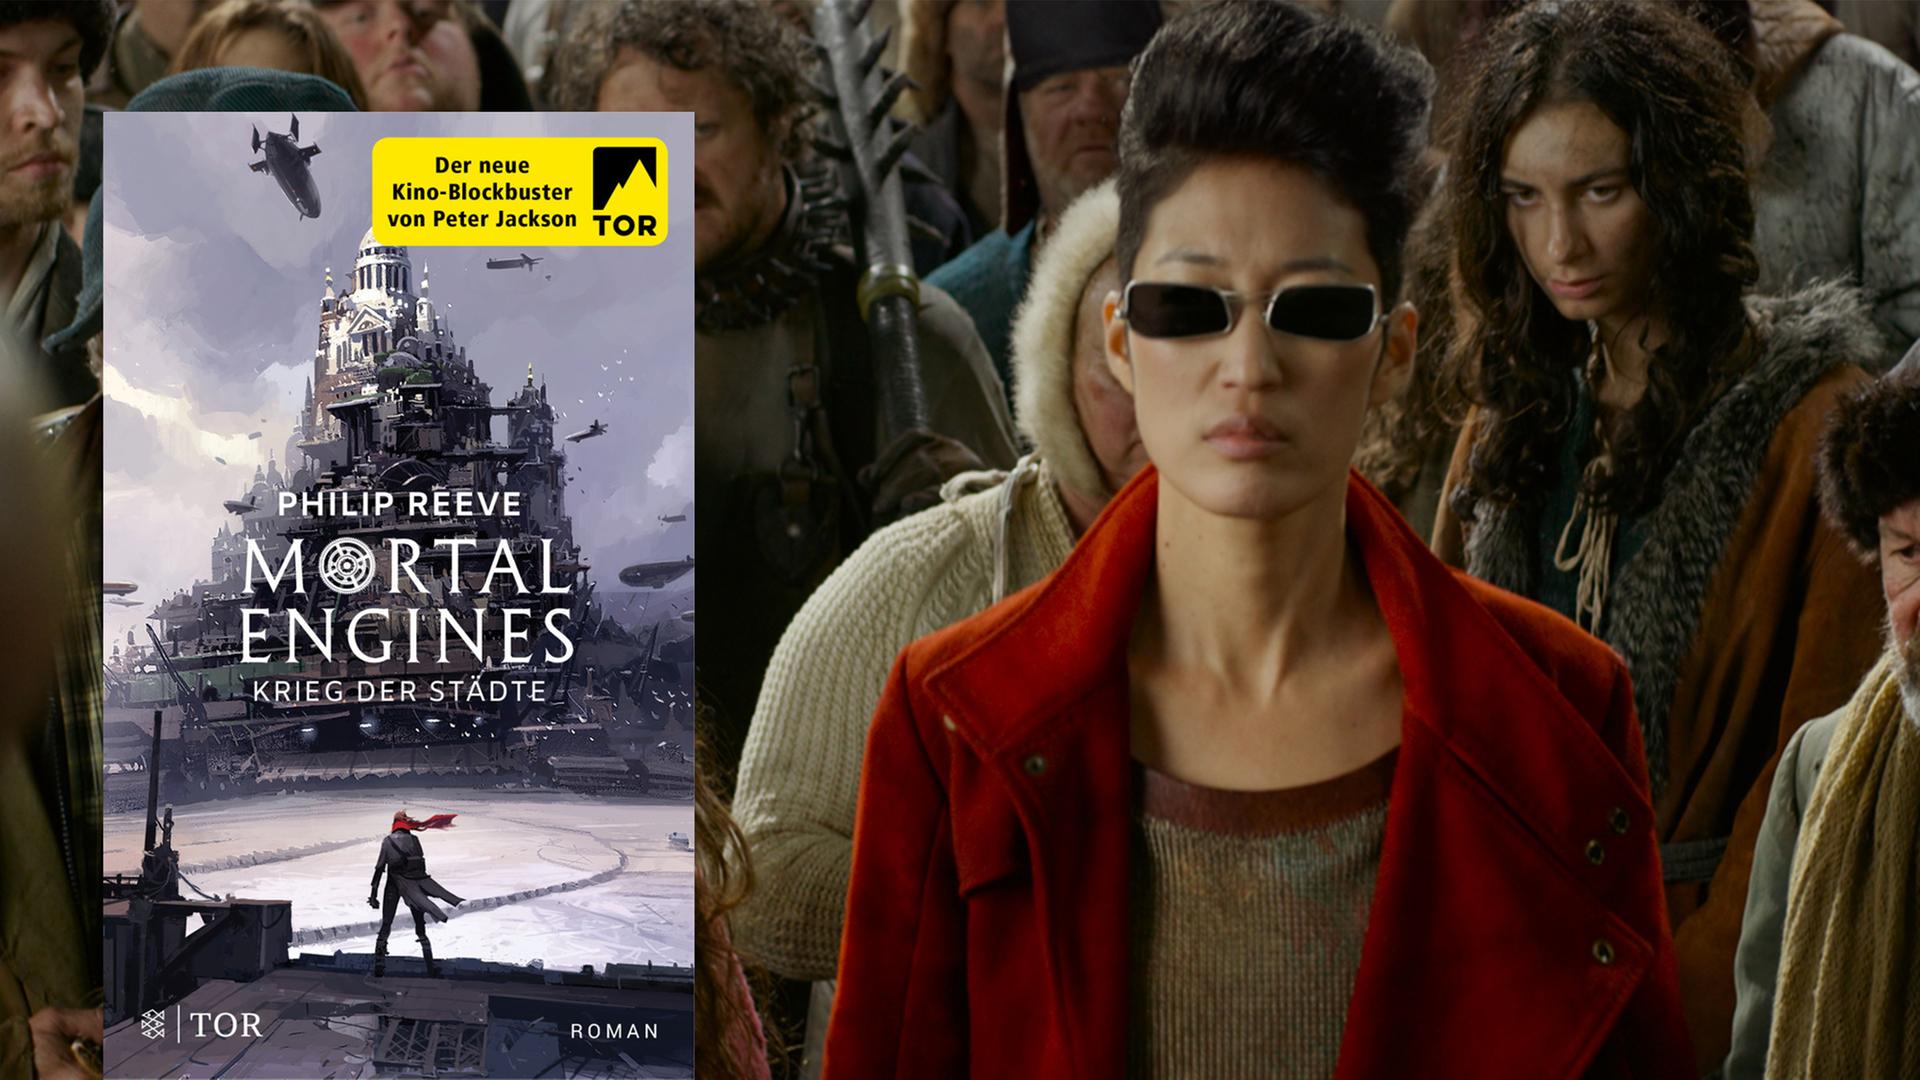 Im Vordergrund: Cover des Buches "Mortal Engines" von Philip Reeve, im Hintergrund: Filmszene aus "Mortal Engines" von Christian Rivers mit Anna Fang als Jihae.